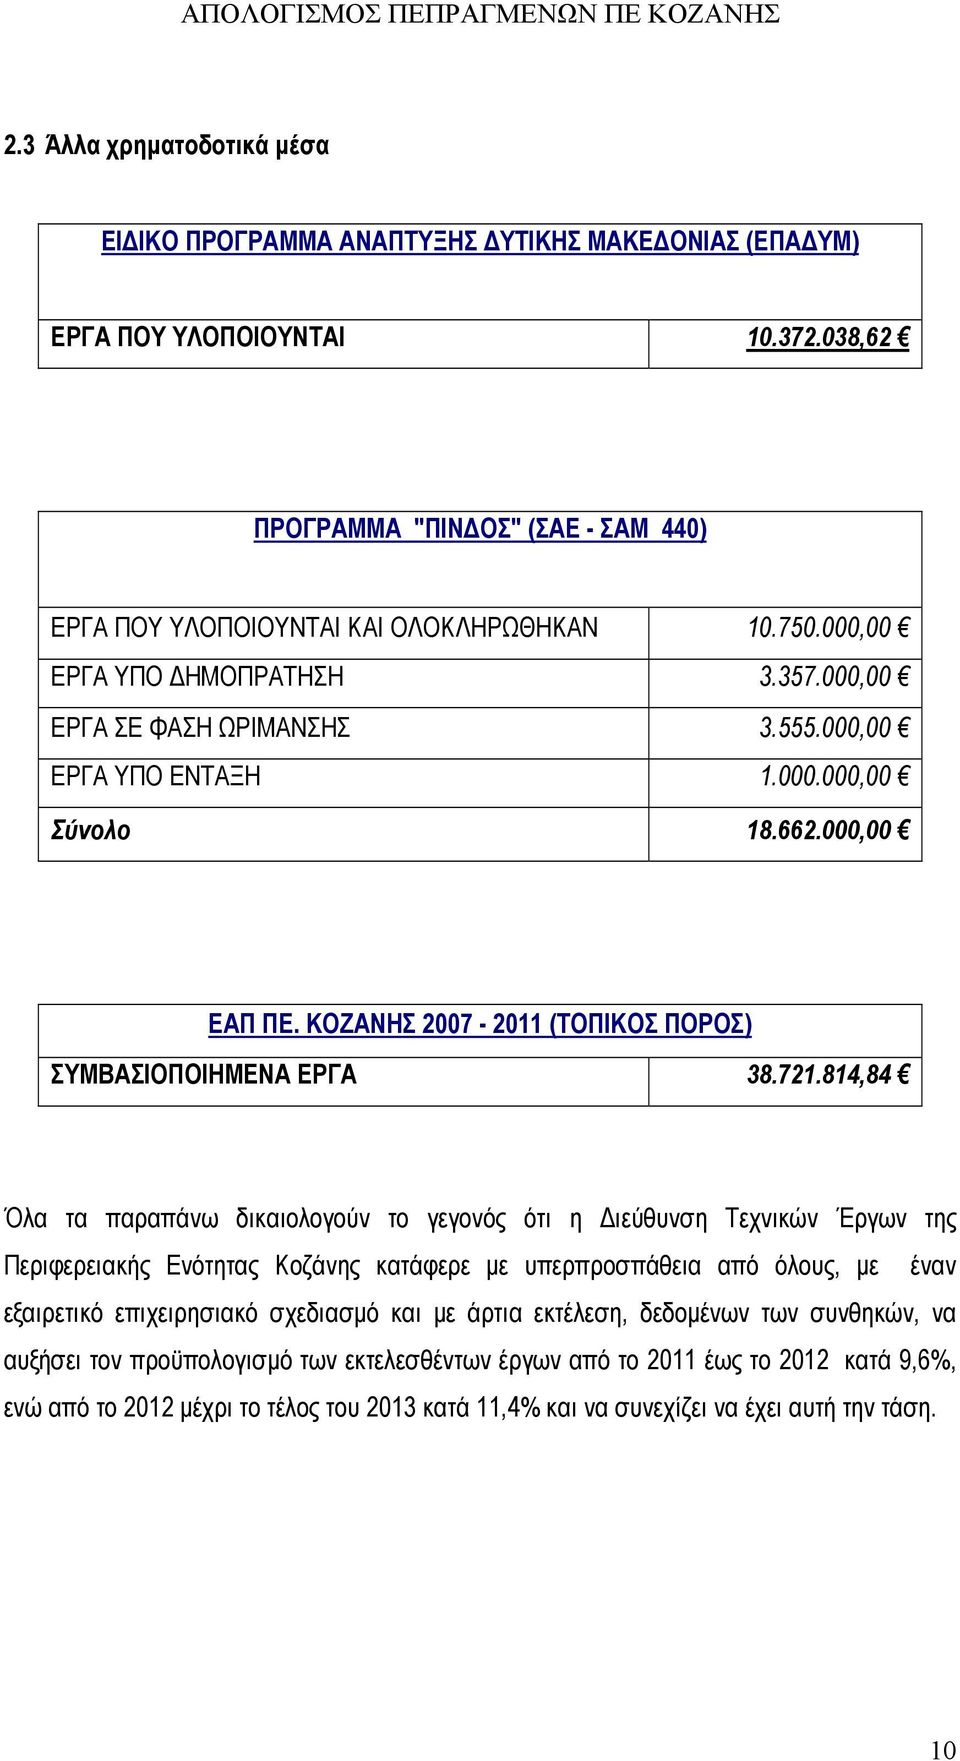 721.814,84 Όλα τα παραπάνω δικαιολογούν το γεγονός ότι η Διεύθυνση Τεχνικών Έργων της Περιφερειακής Ενότητας Κοζάνης κατάφερε με υπερπροσπάθεια από όλους, με έναν εξαιρετικό επιχειρησιακό σχεδιασμό